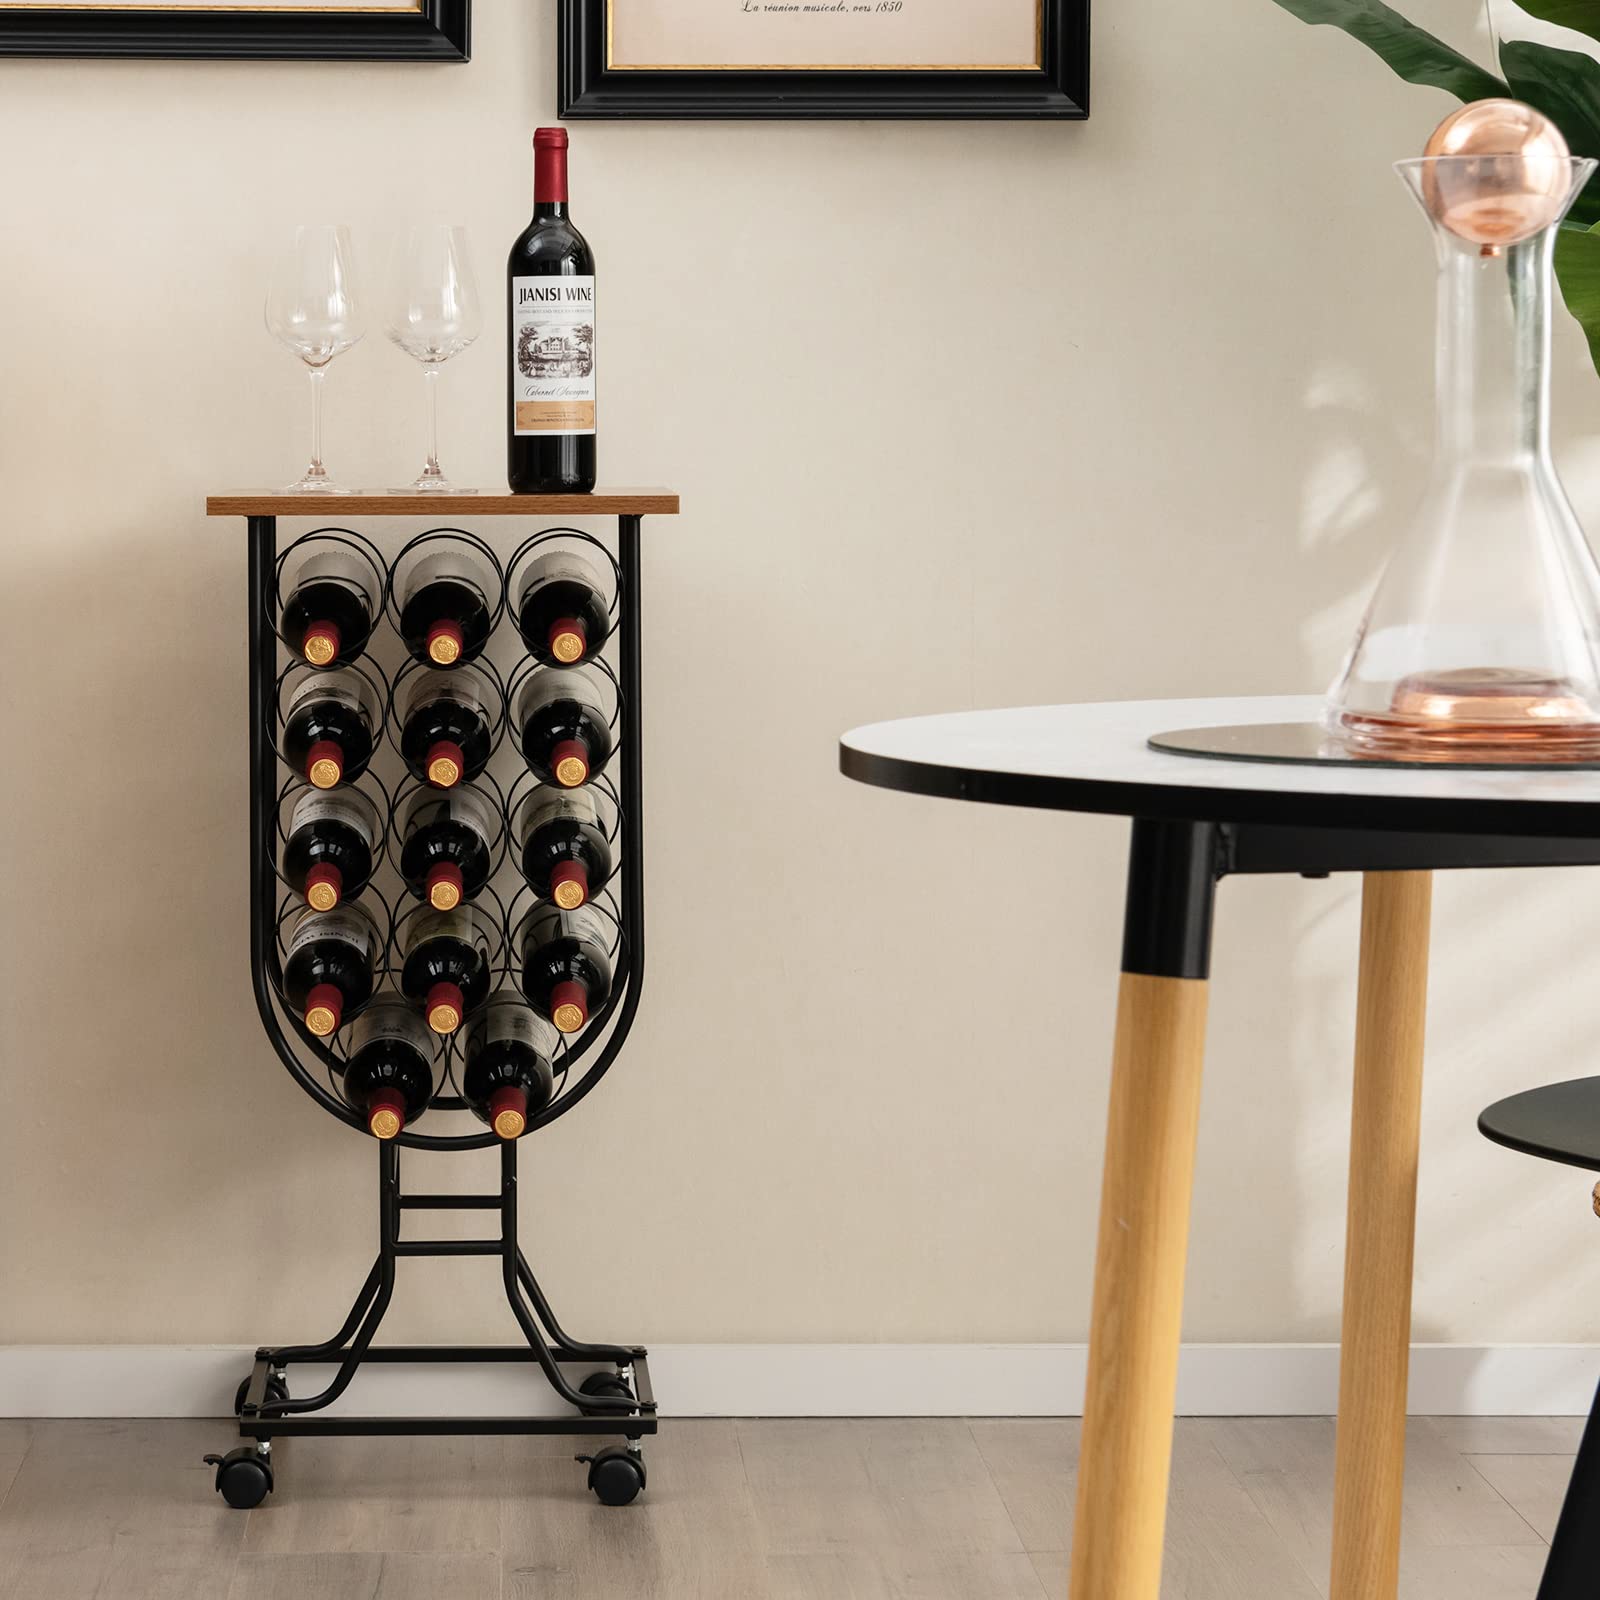 14-Bottle Wine Rack Freestanding Floor - Giantex